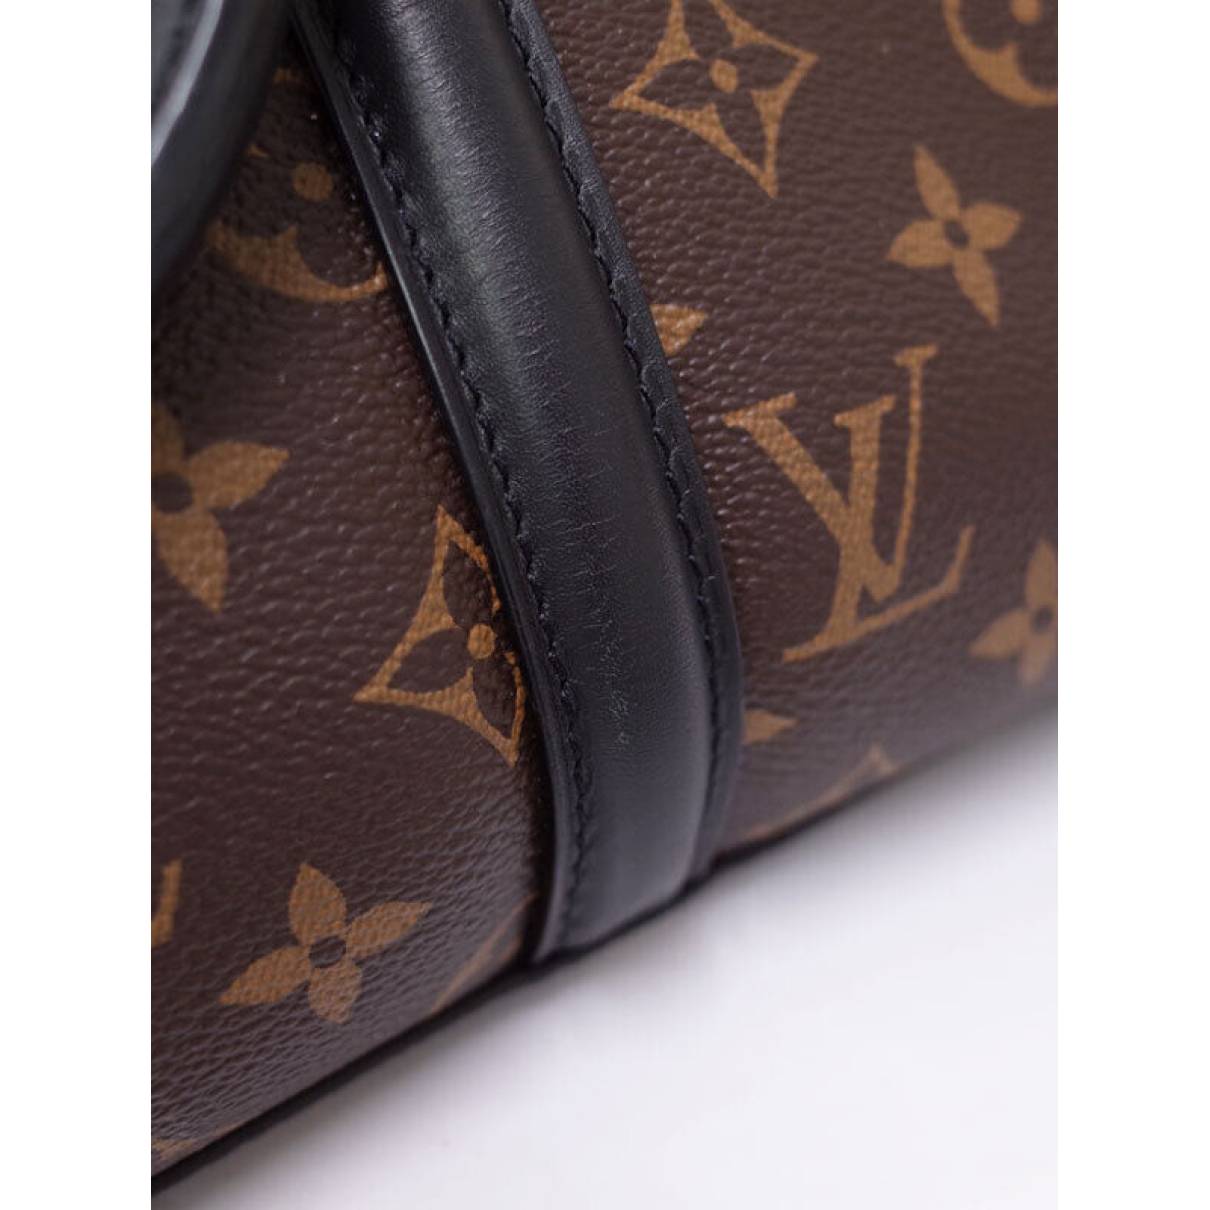 Louis Vuitton - Authenticated Soufflot Handbag - Leather Brown Plain for Women, Good Condition